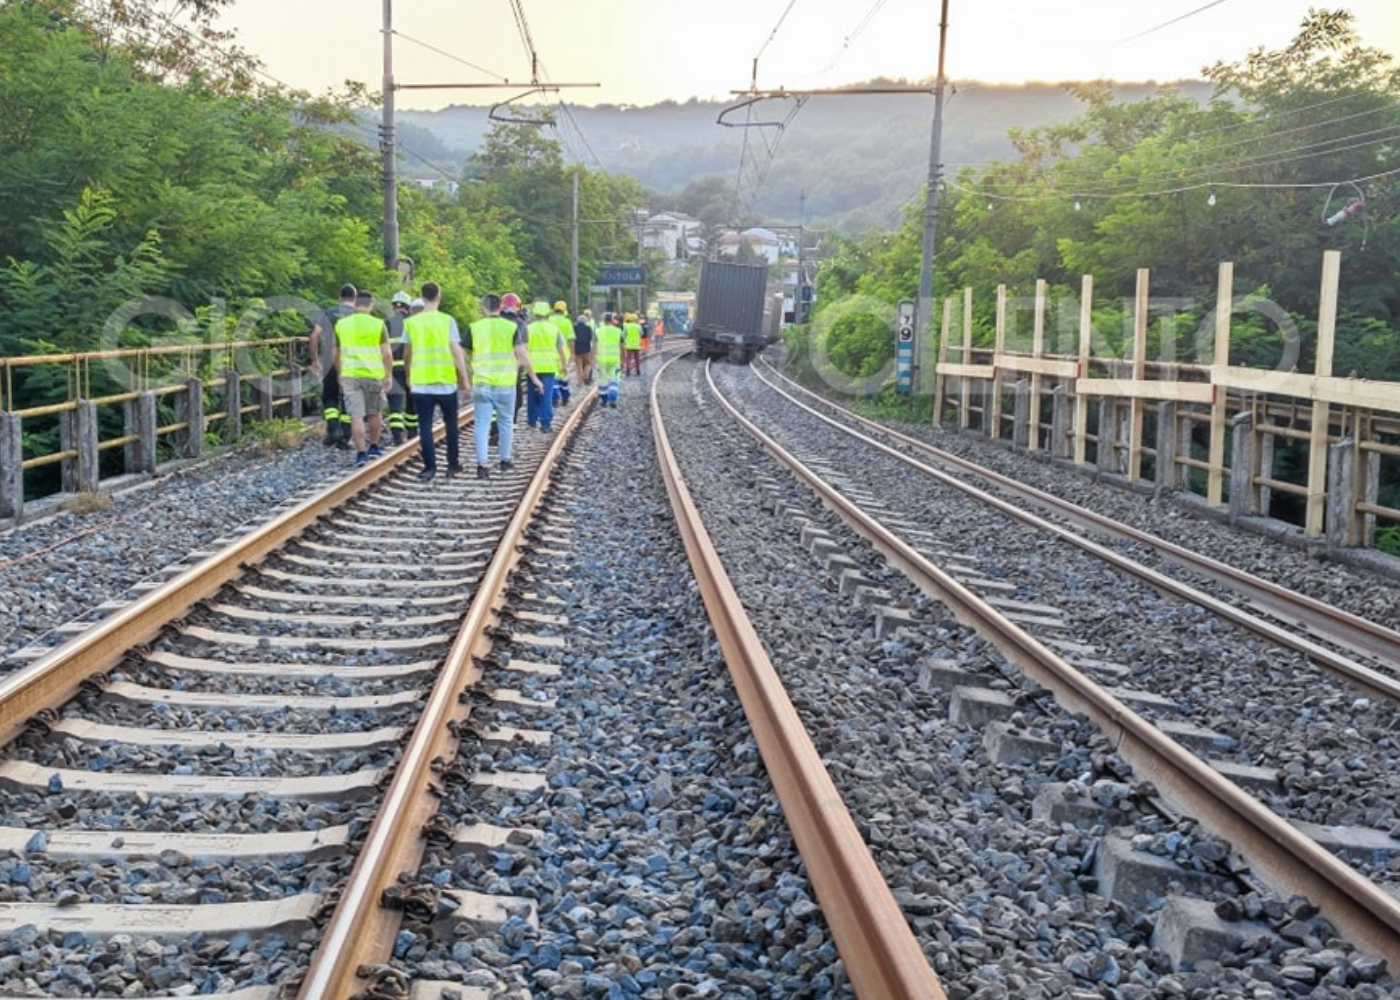 Centola, incidente ferroviario: la Procura ha aperto un’inchiesta. Treno sequestrato